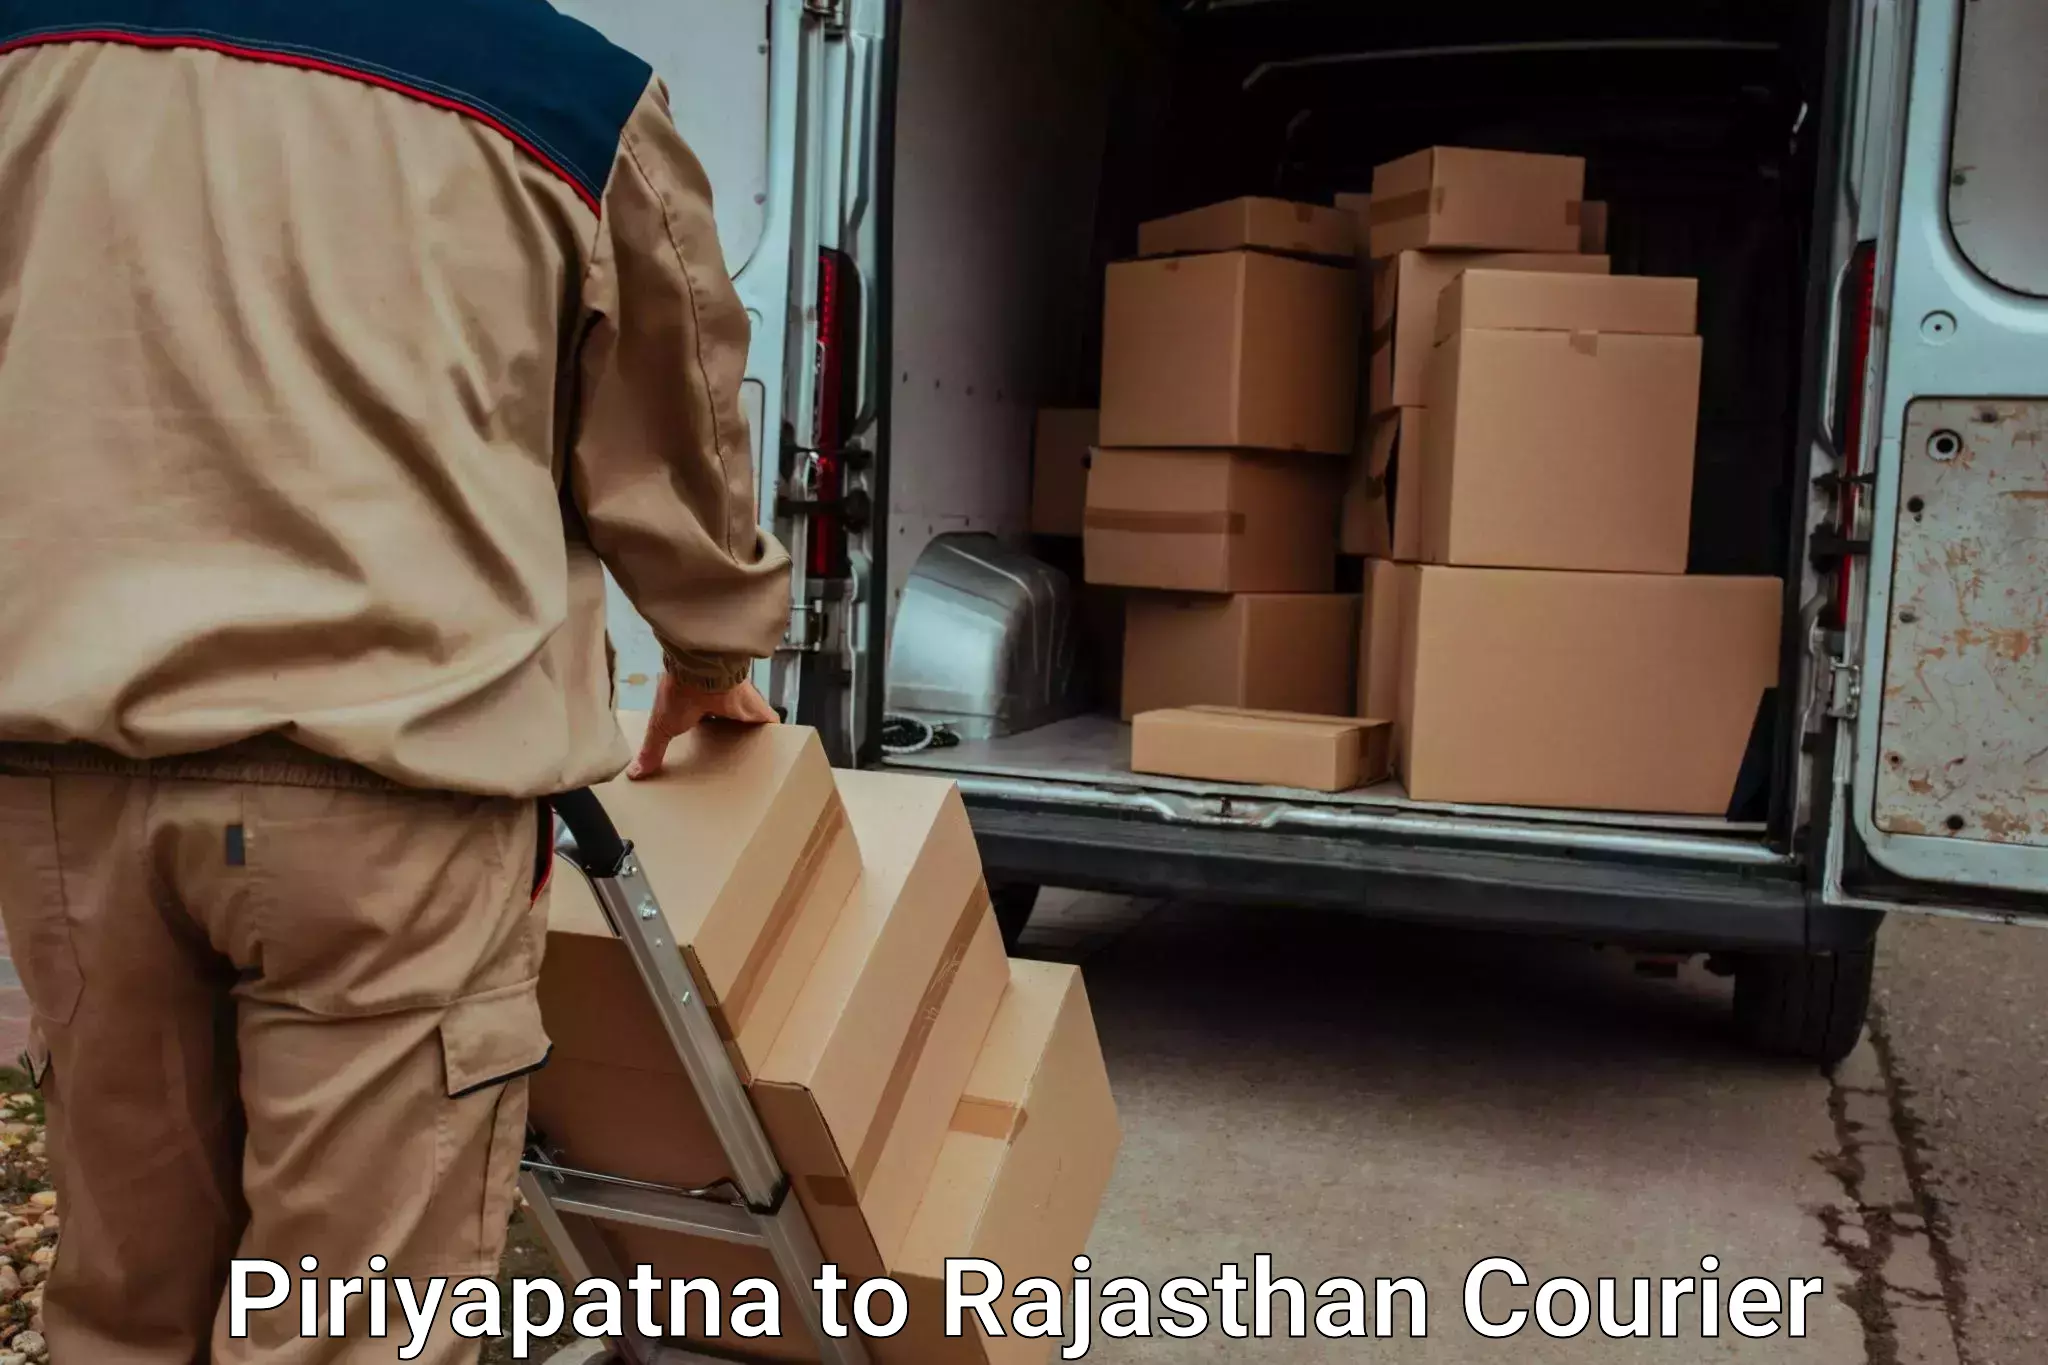 Baggage transport innovation Piriyapatna to Yeswanthapur